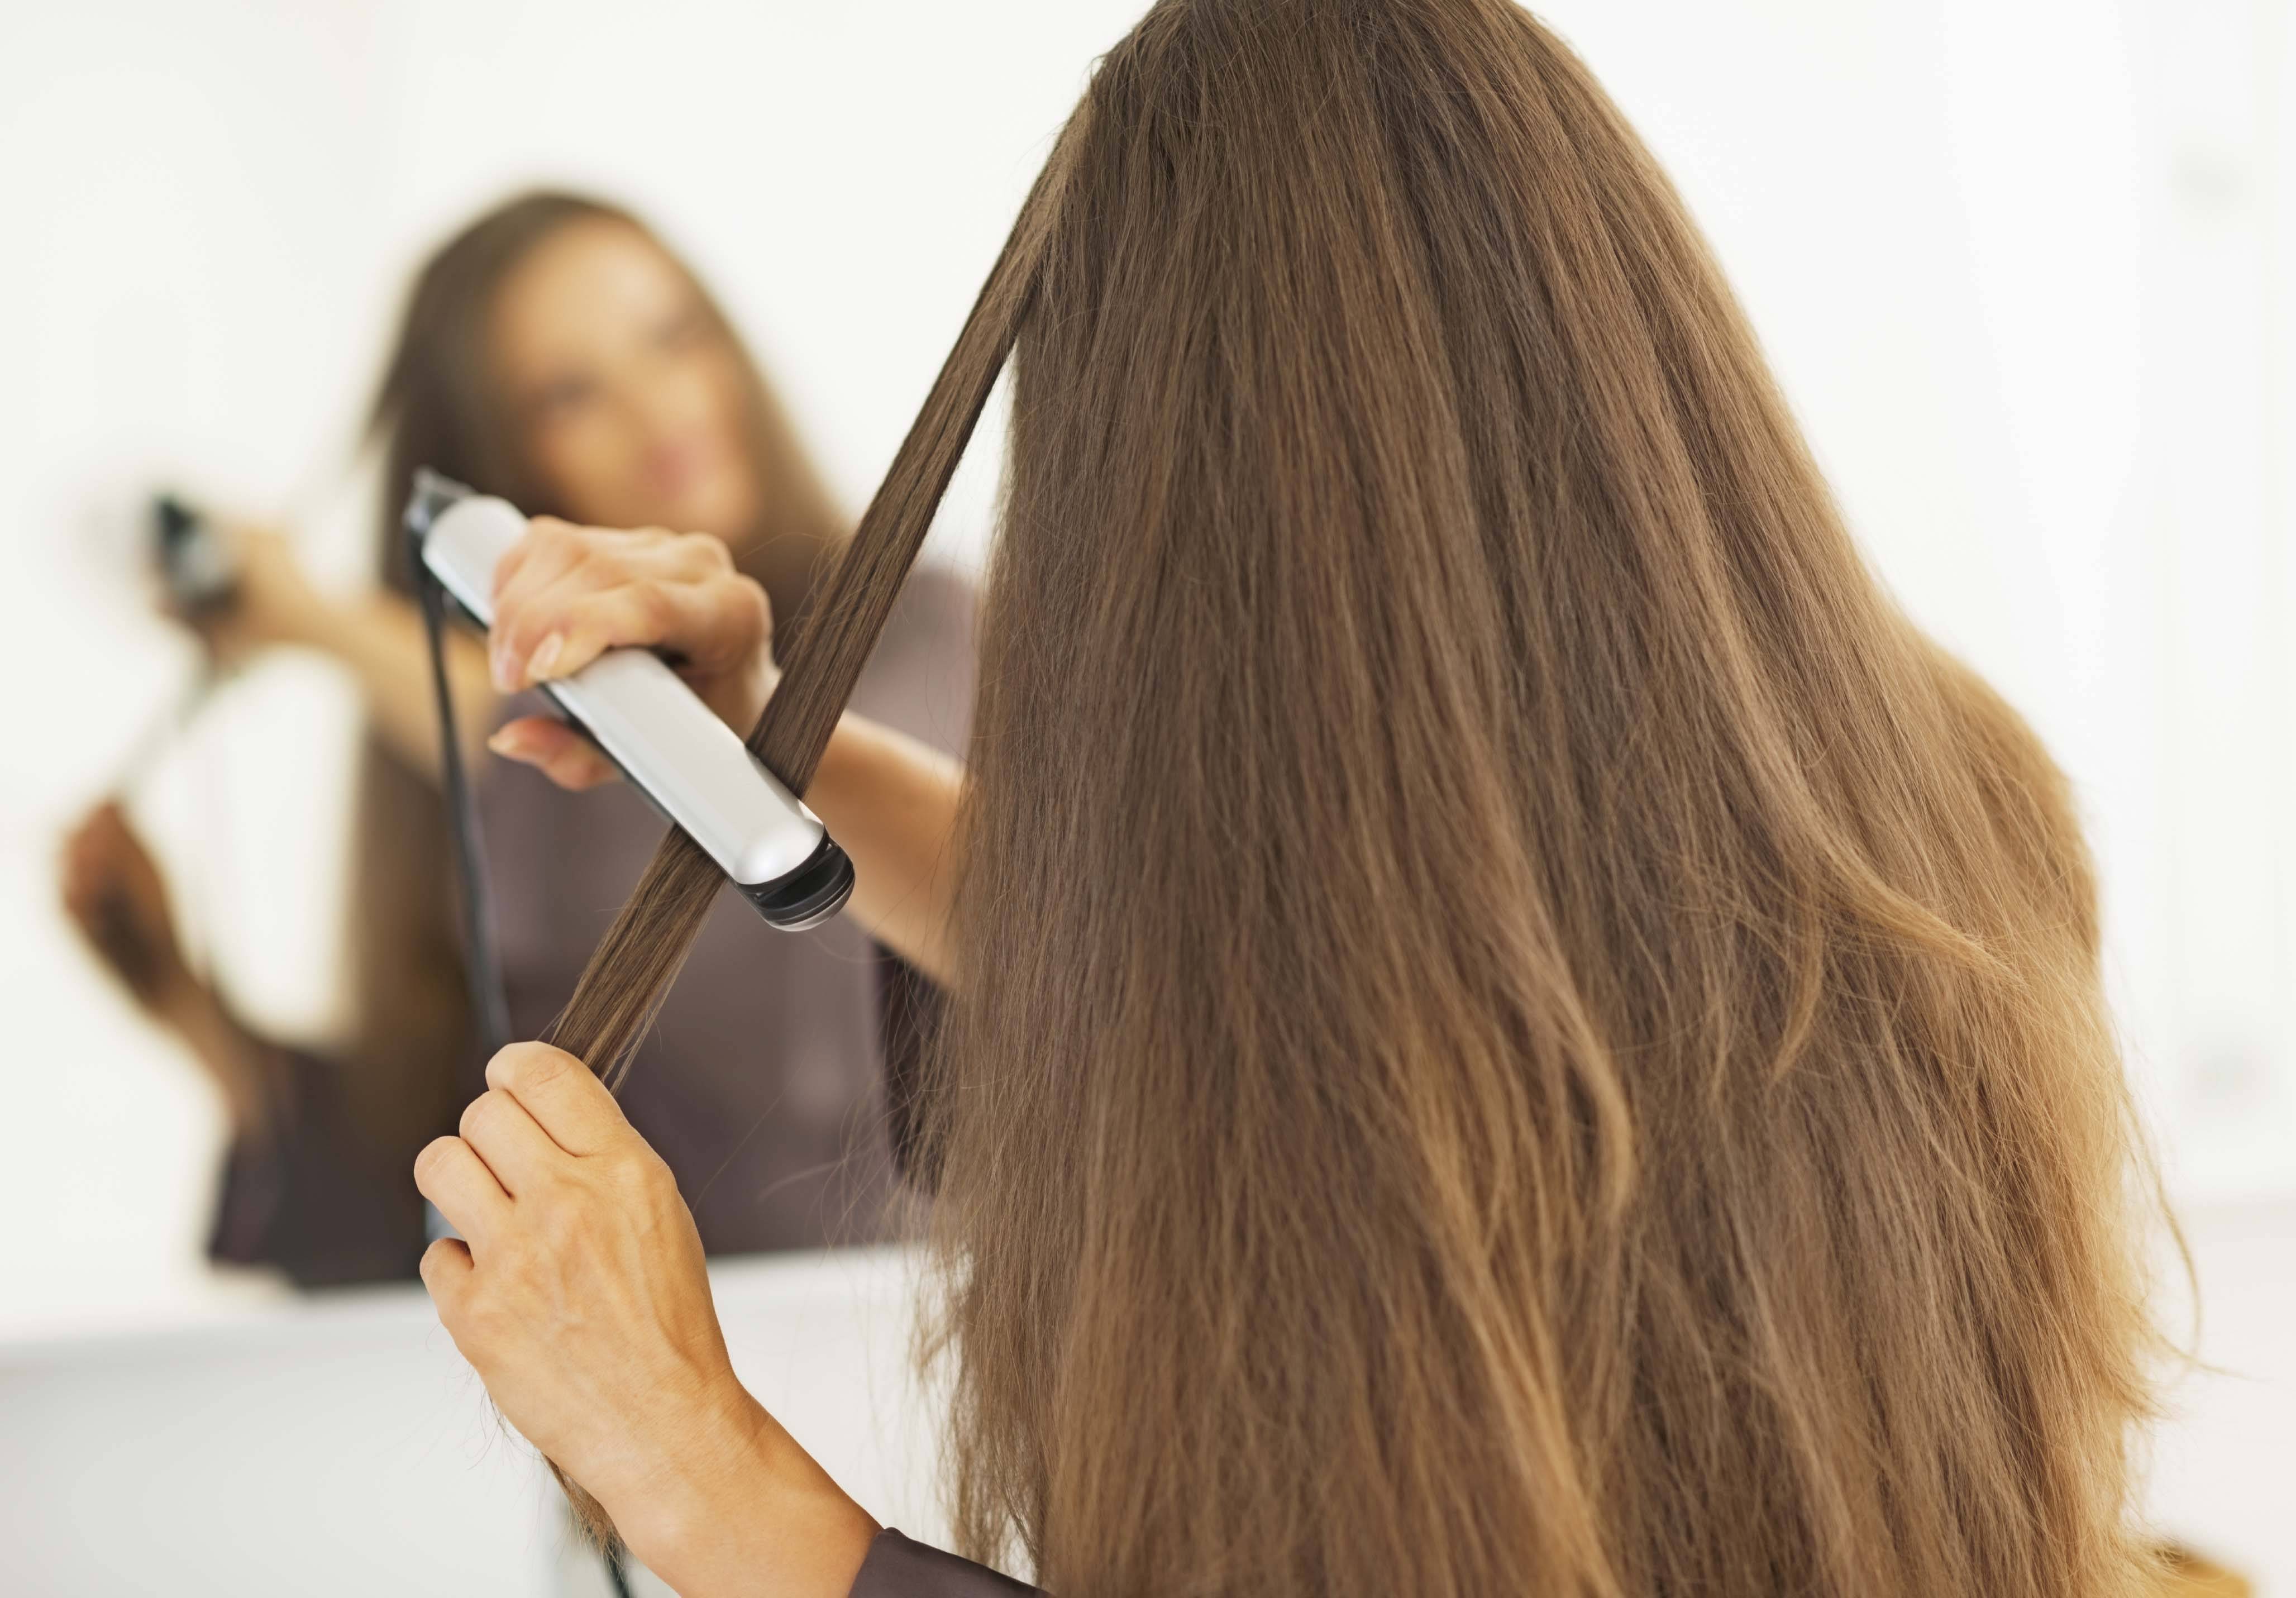 Уход за волосами в домашних условиях - как правильно ухаживать: советы и рекомендации / интернет-магазин украшений миледи